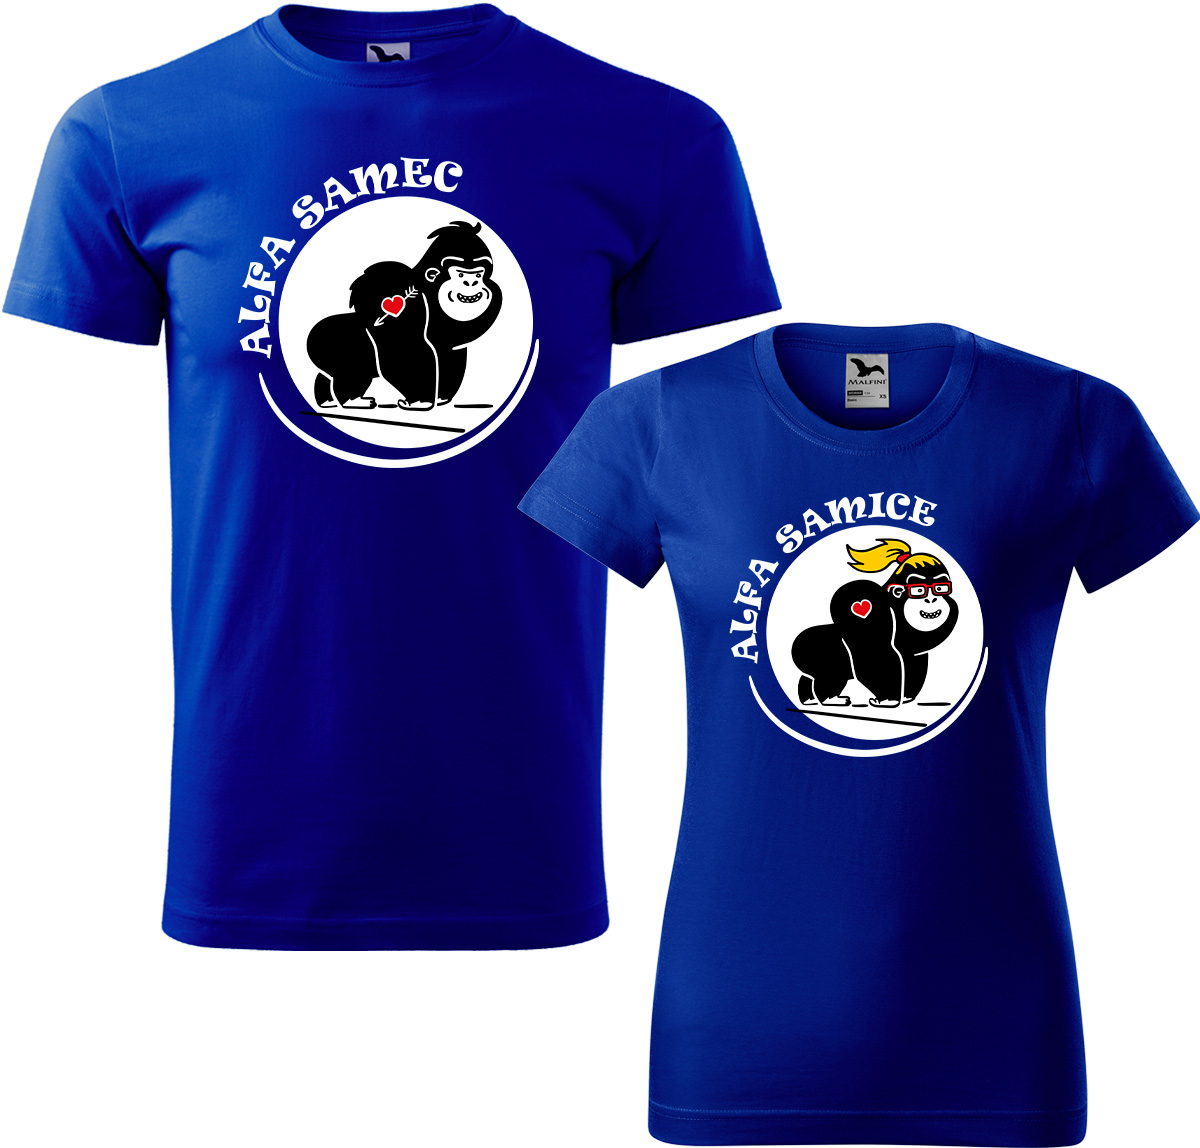 Trička pro páry - Alfa samec a alfa samice Barva: Královská modrá (05), Velikost dámské tričko: S, Velikost pánské tričko: M